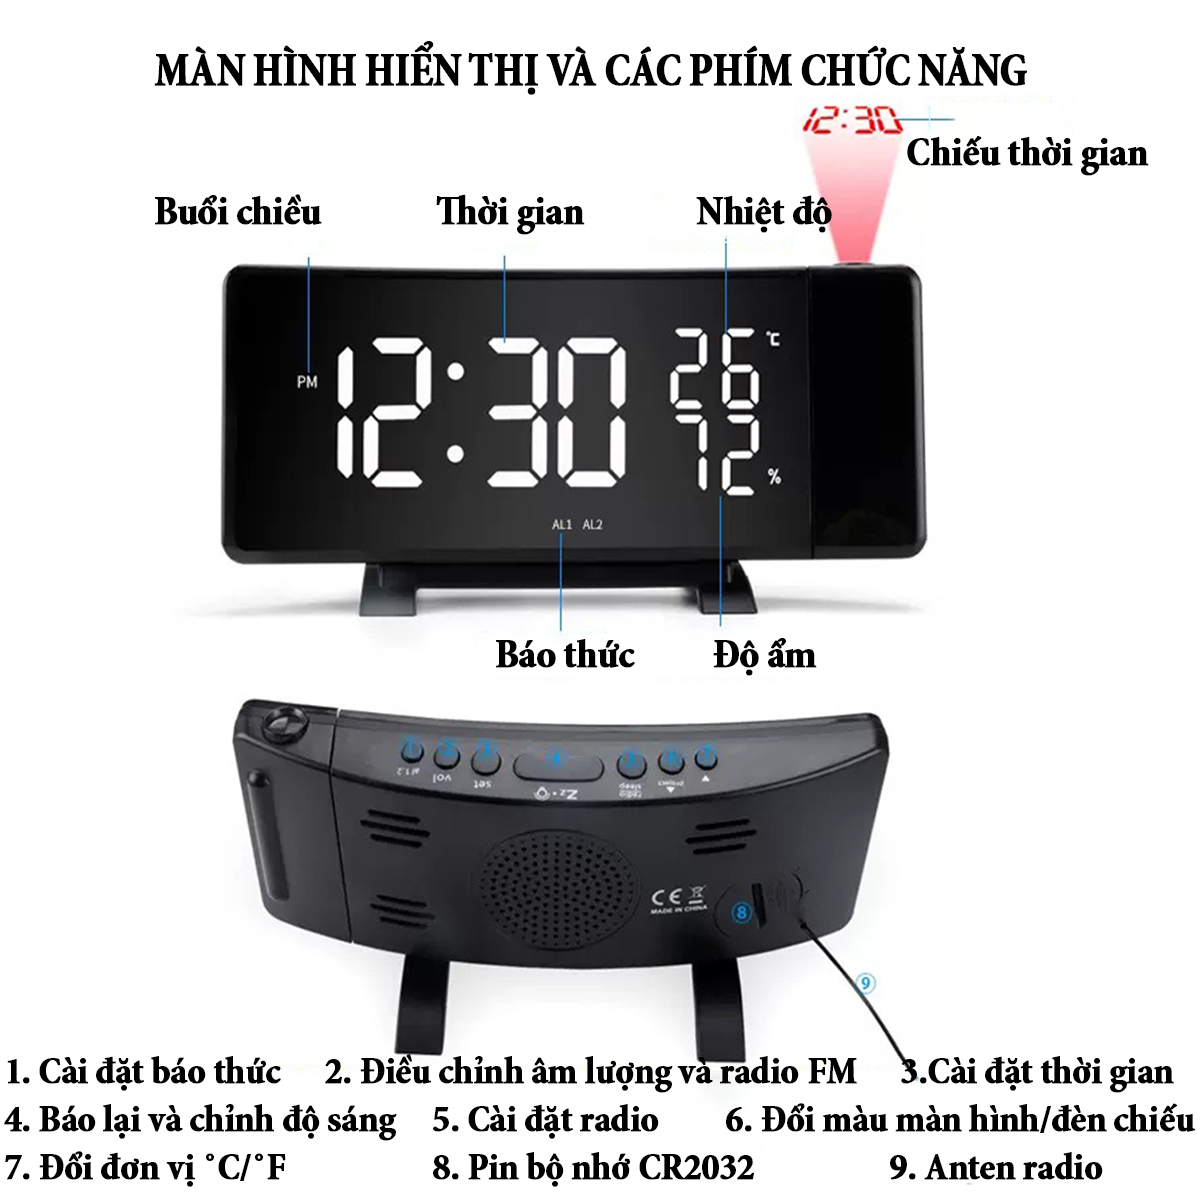 Đồng hồ để bàn kỹ thuật số Projection màn hình cong tích hợp nhiều chức năng với đèn led chiếu tường radio FM báo thức cổng USB kép